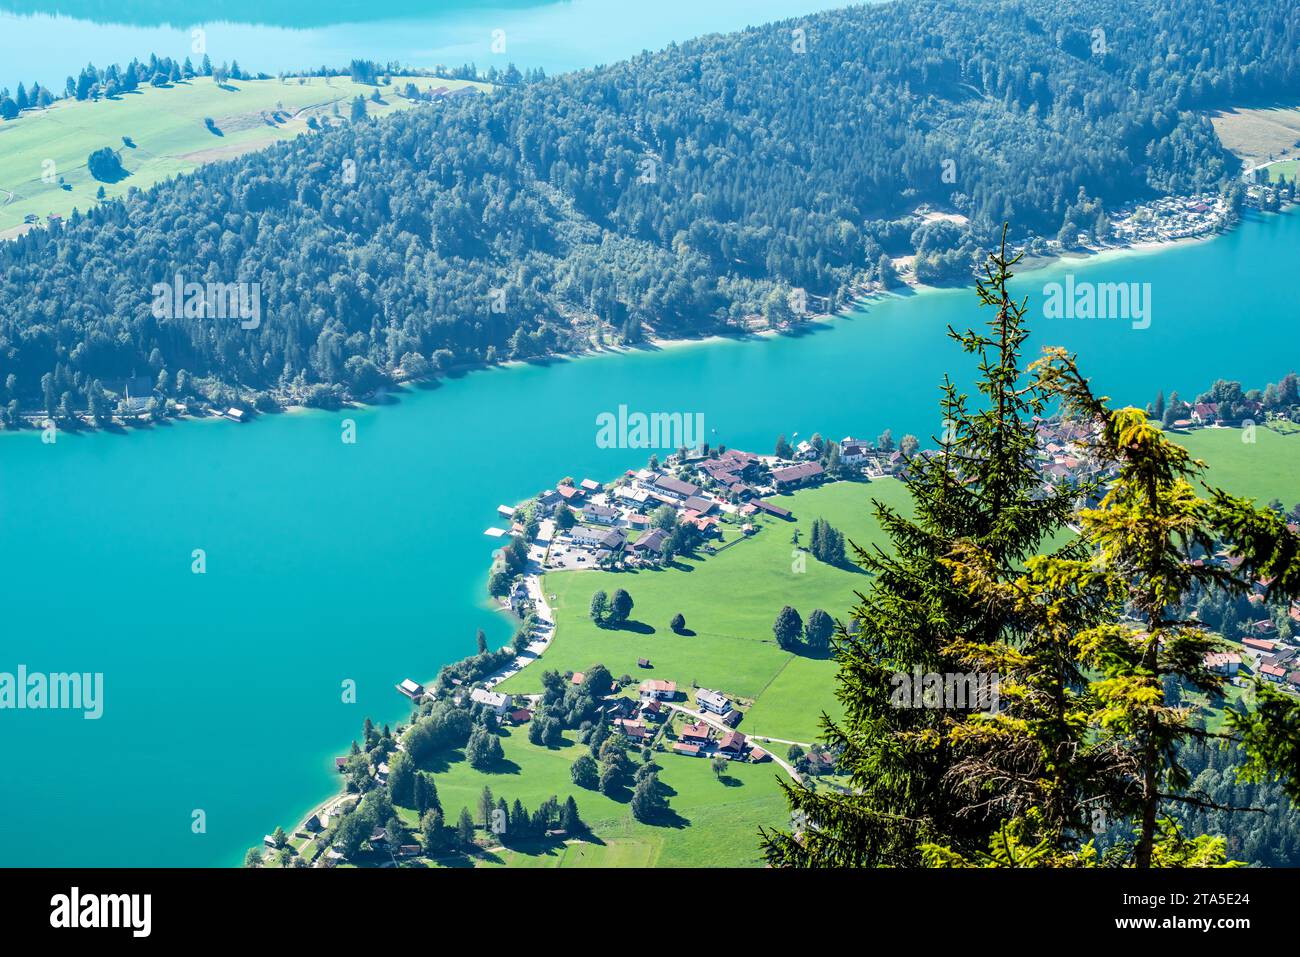 Der Walchensee ist einer der tiefsten (maximale Tiefe: 190 m) und zugleich einer der größten (16,40 km²) Alpenseen Deutschlands. Er liegt 75 km südlic Stock Photo